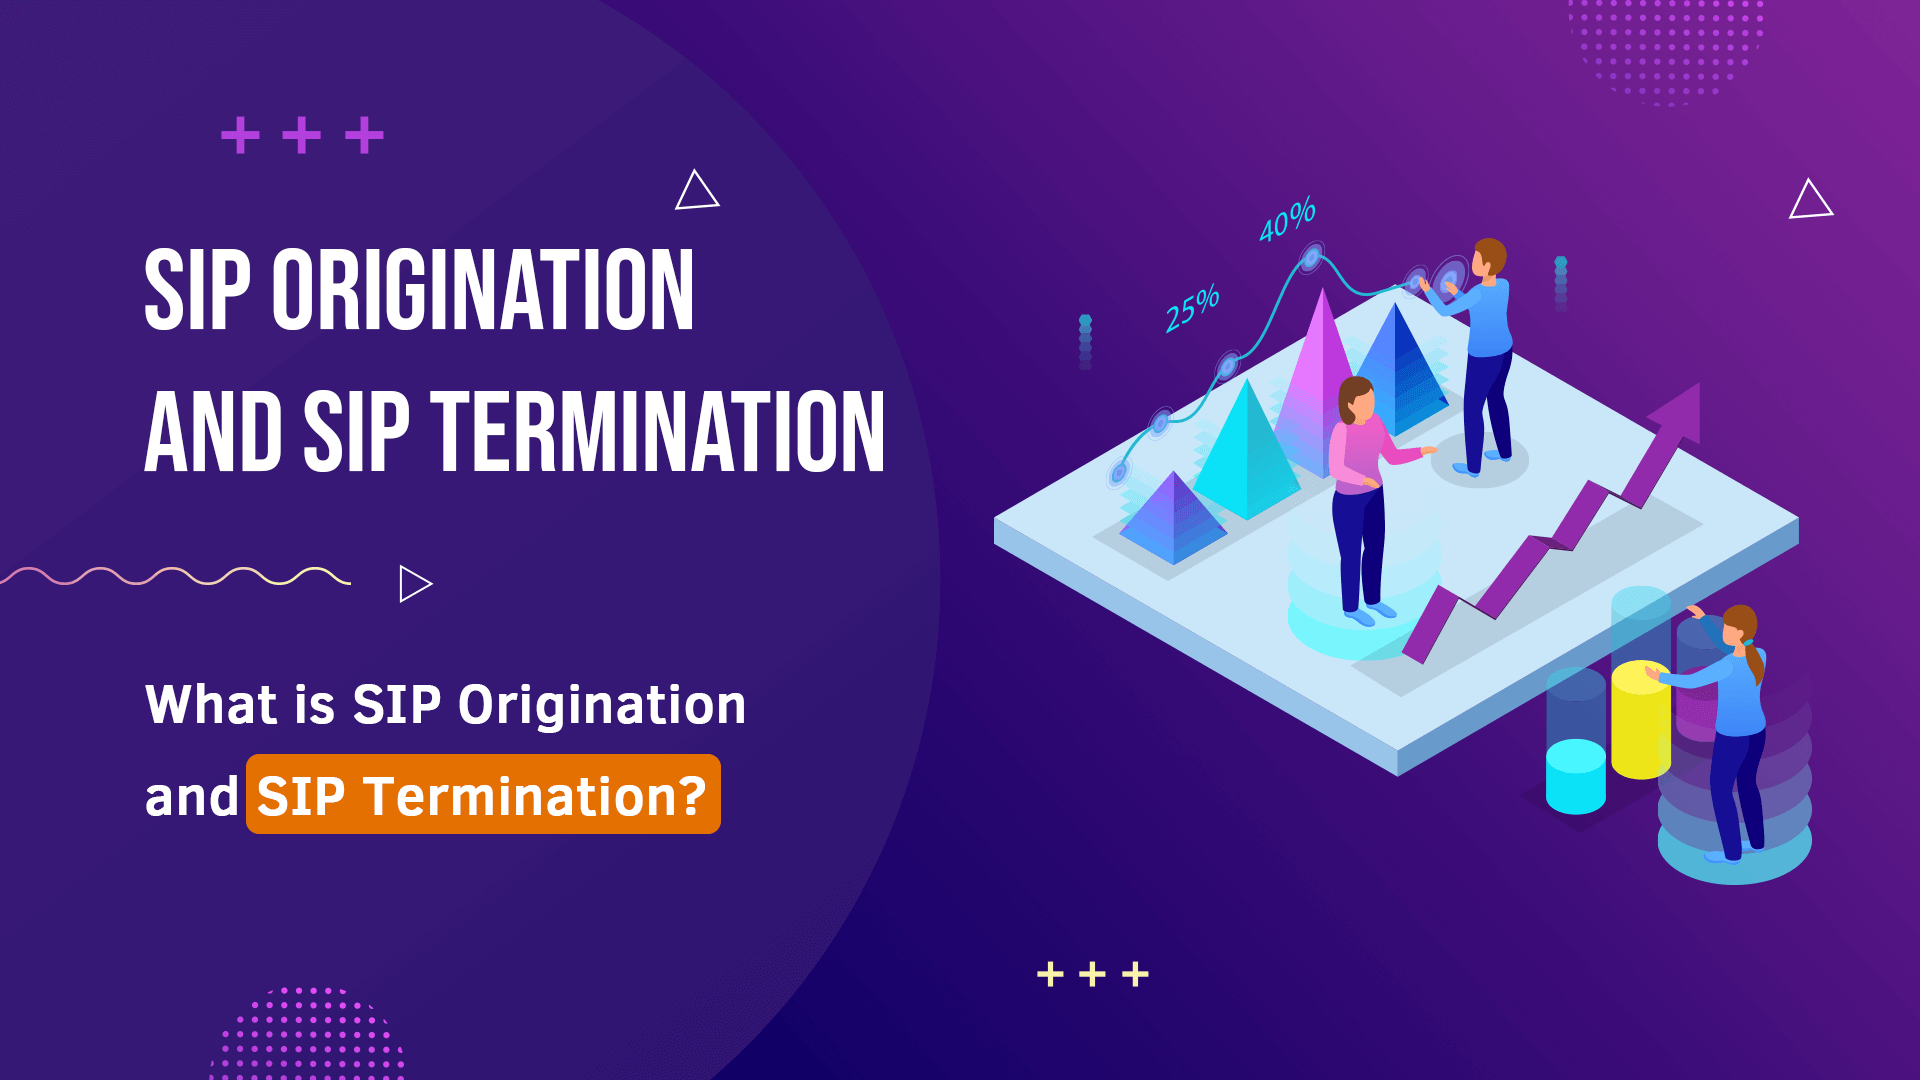 SIP Origination and SIP Termination